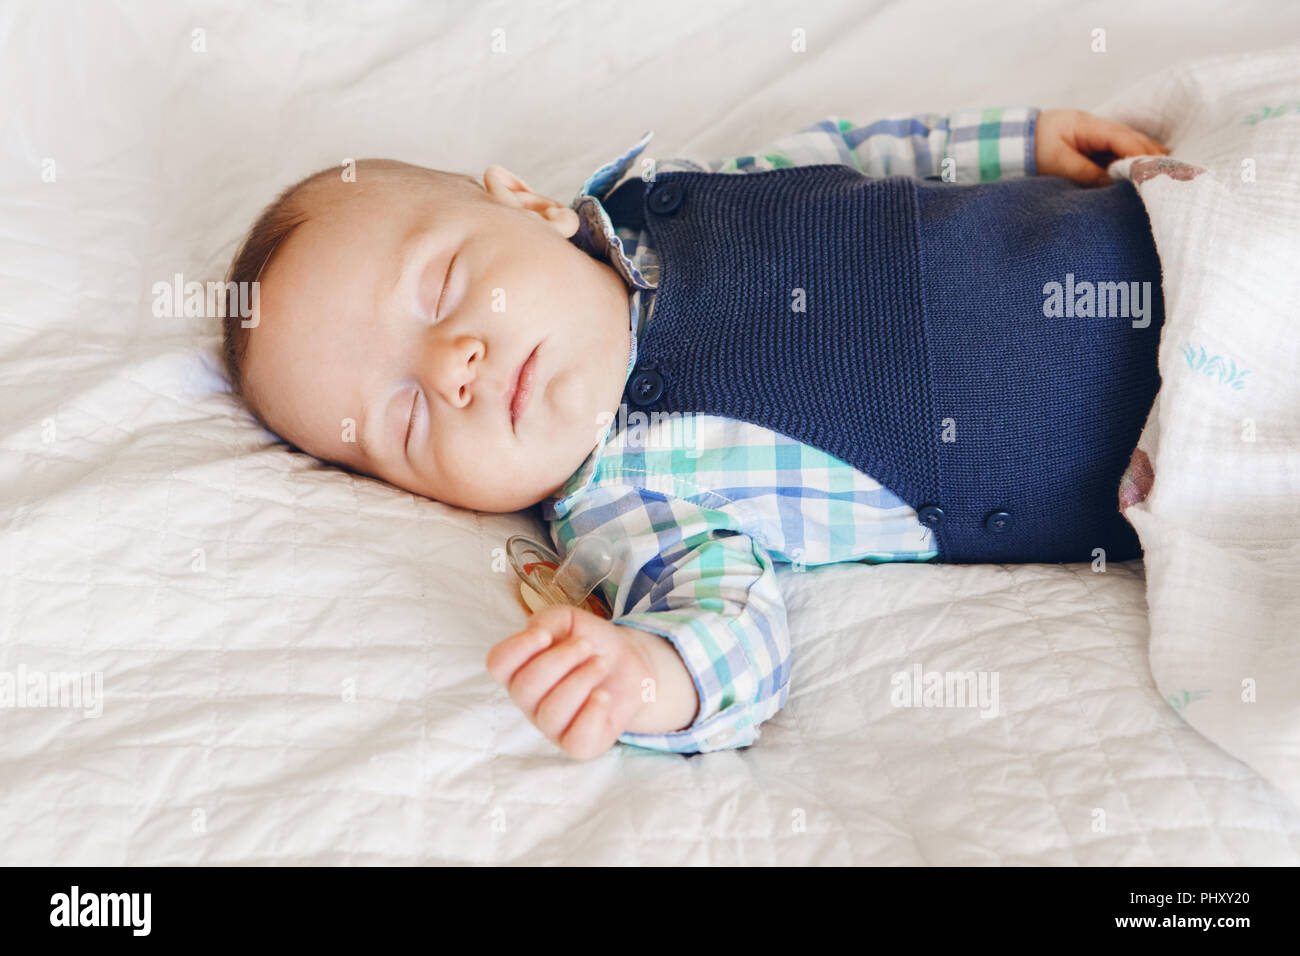 Porträt einer cute adorable White kaukasische Baby neugeborenen Jungen Mädchen schlafen Träumen mit schnuller Schnuller im Mund, das Tragen von T-shirt Body, liegend auf dem Bett Stockfoto